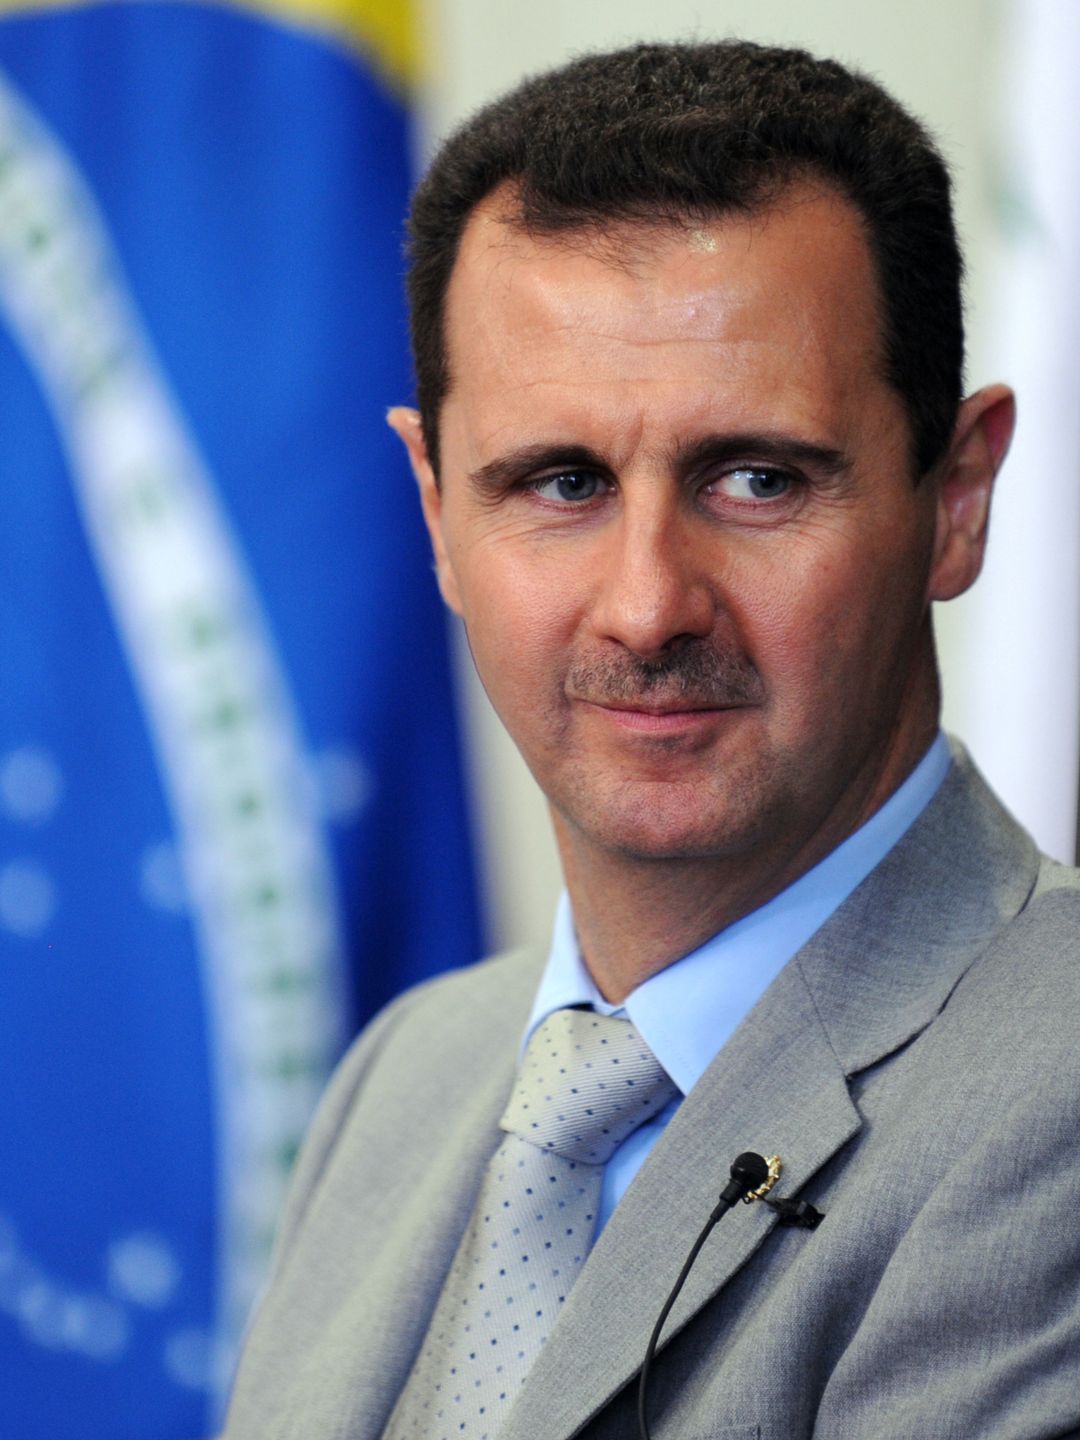 Bashar Assad early life